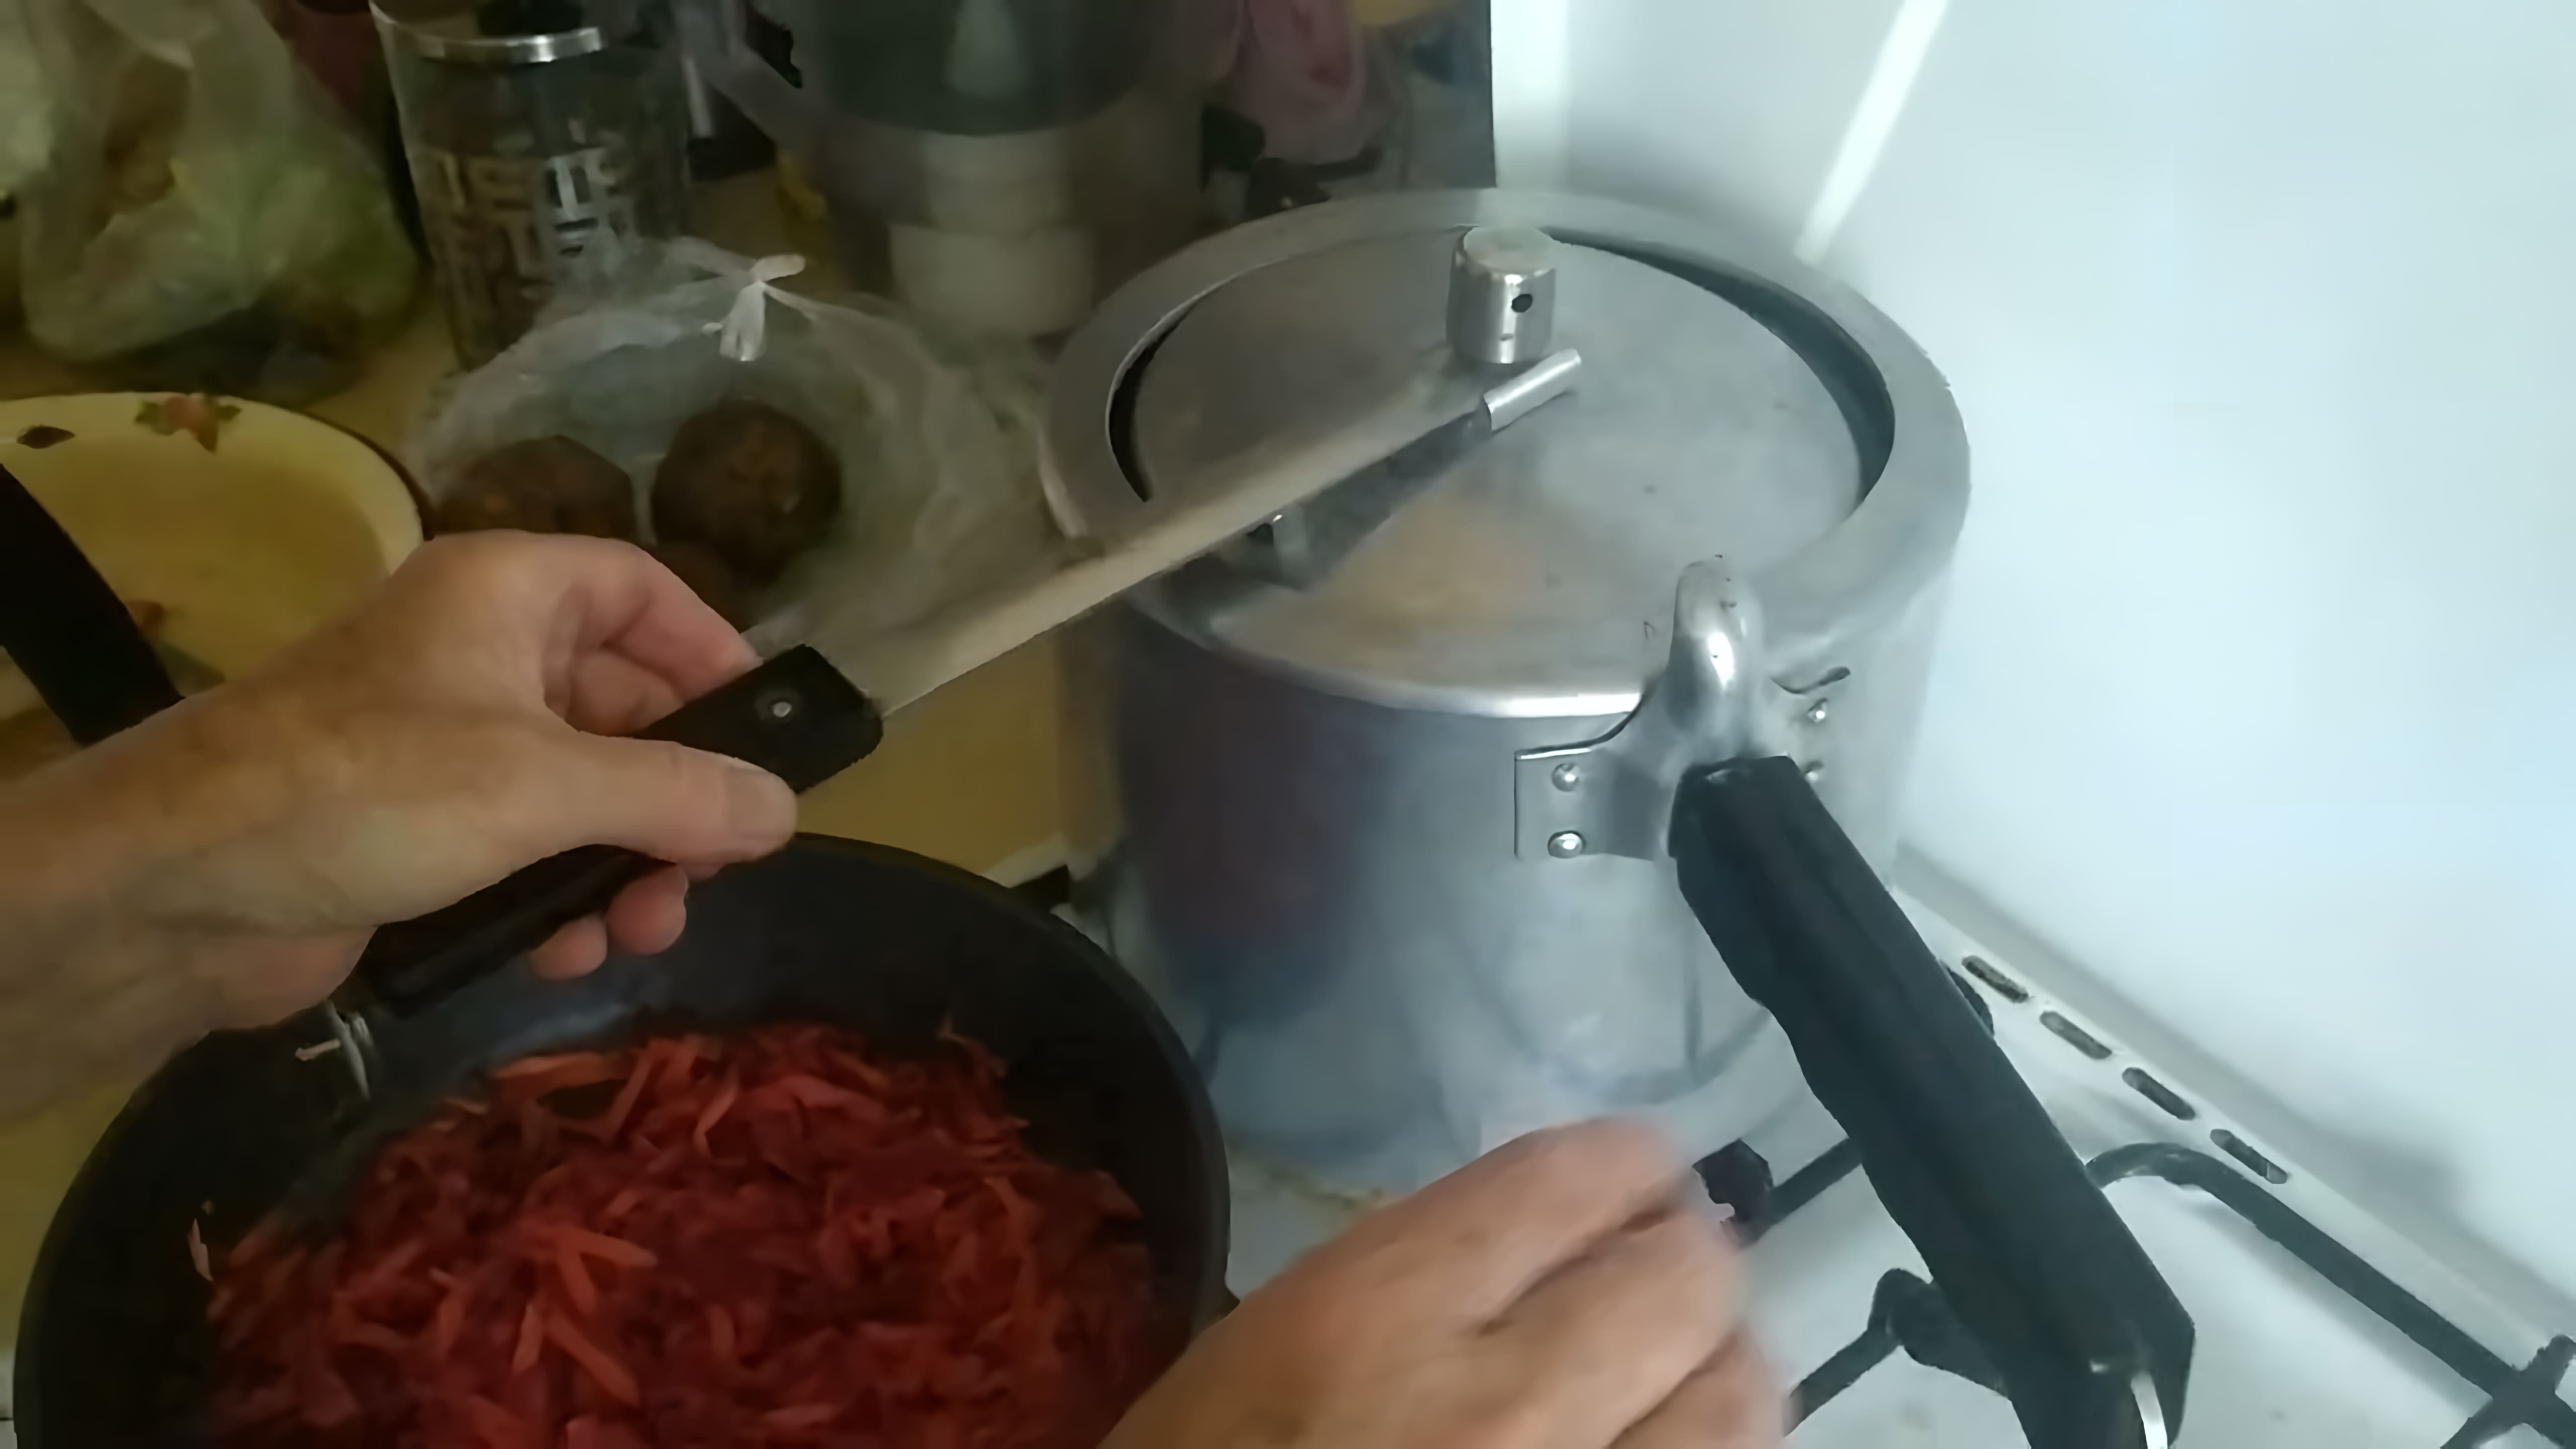 В данном видео демонстрируется использование советской скороварки для приготовления борща